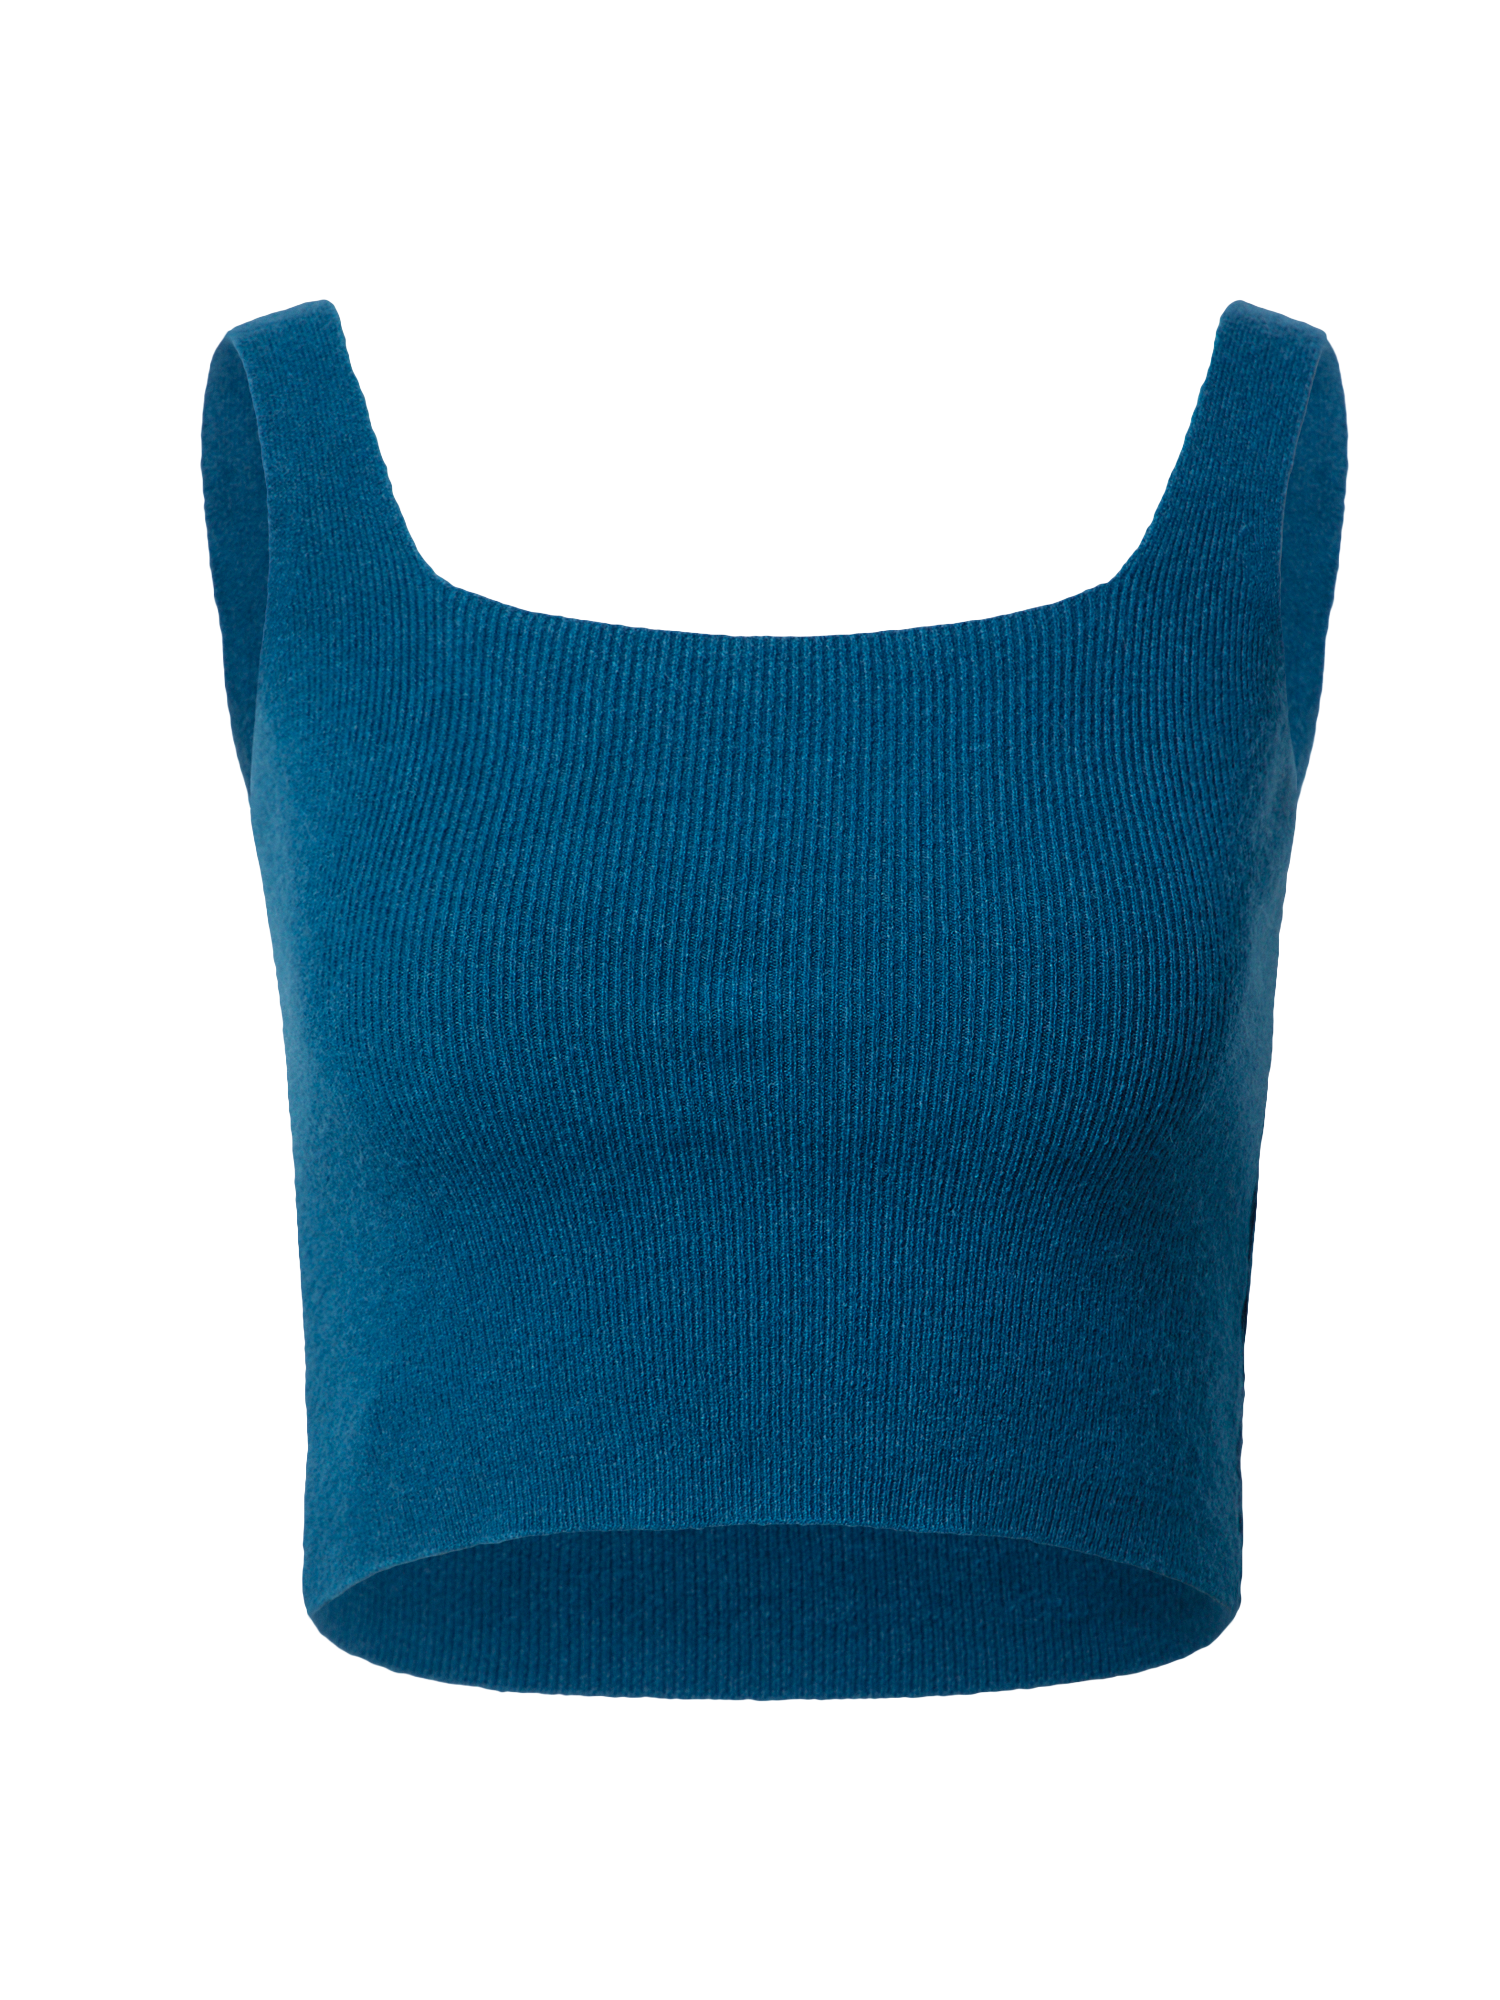 Odzież Koszulki & topy WAL G. Top SAMMY w kolorze Błękitnym 